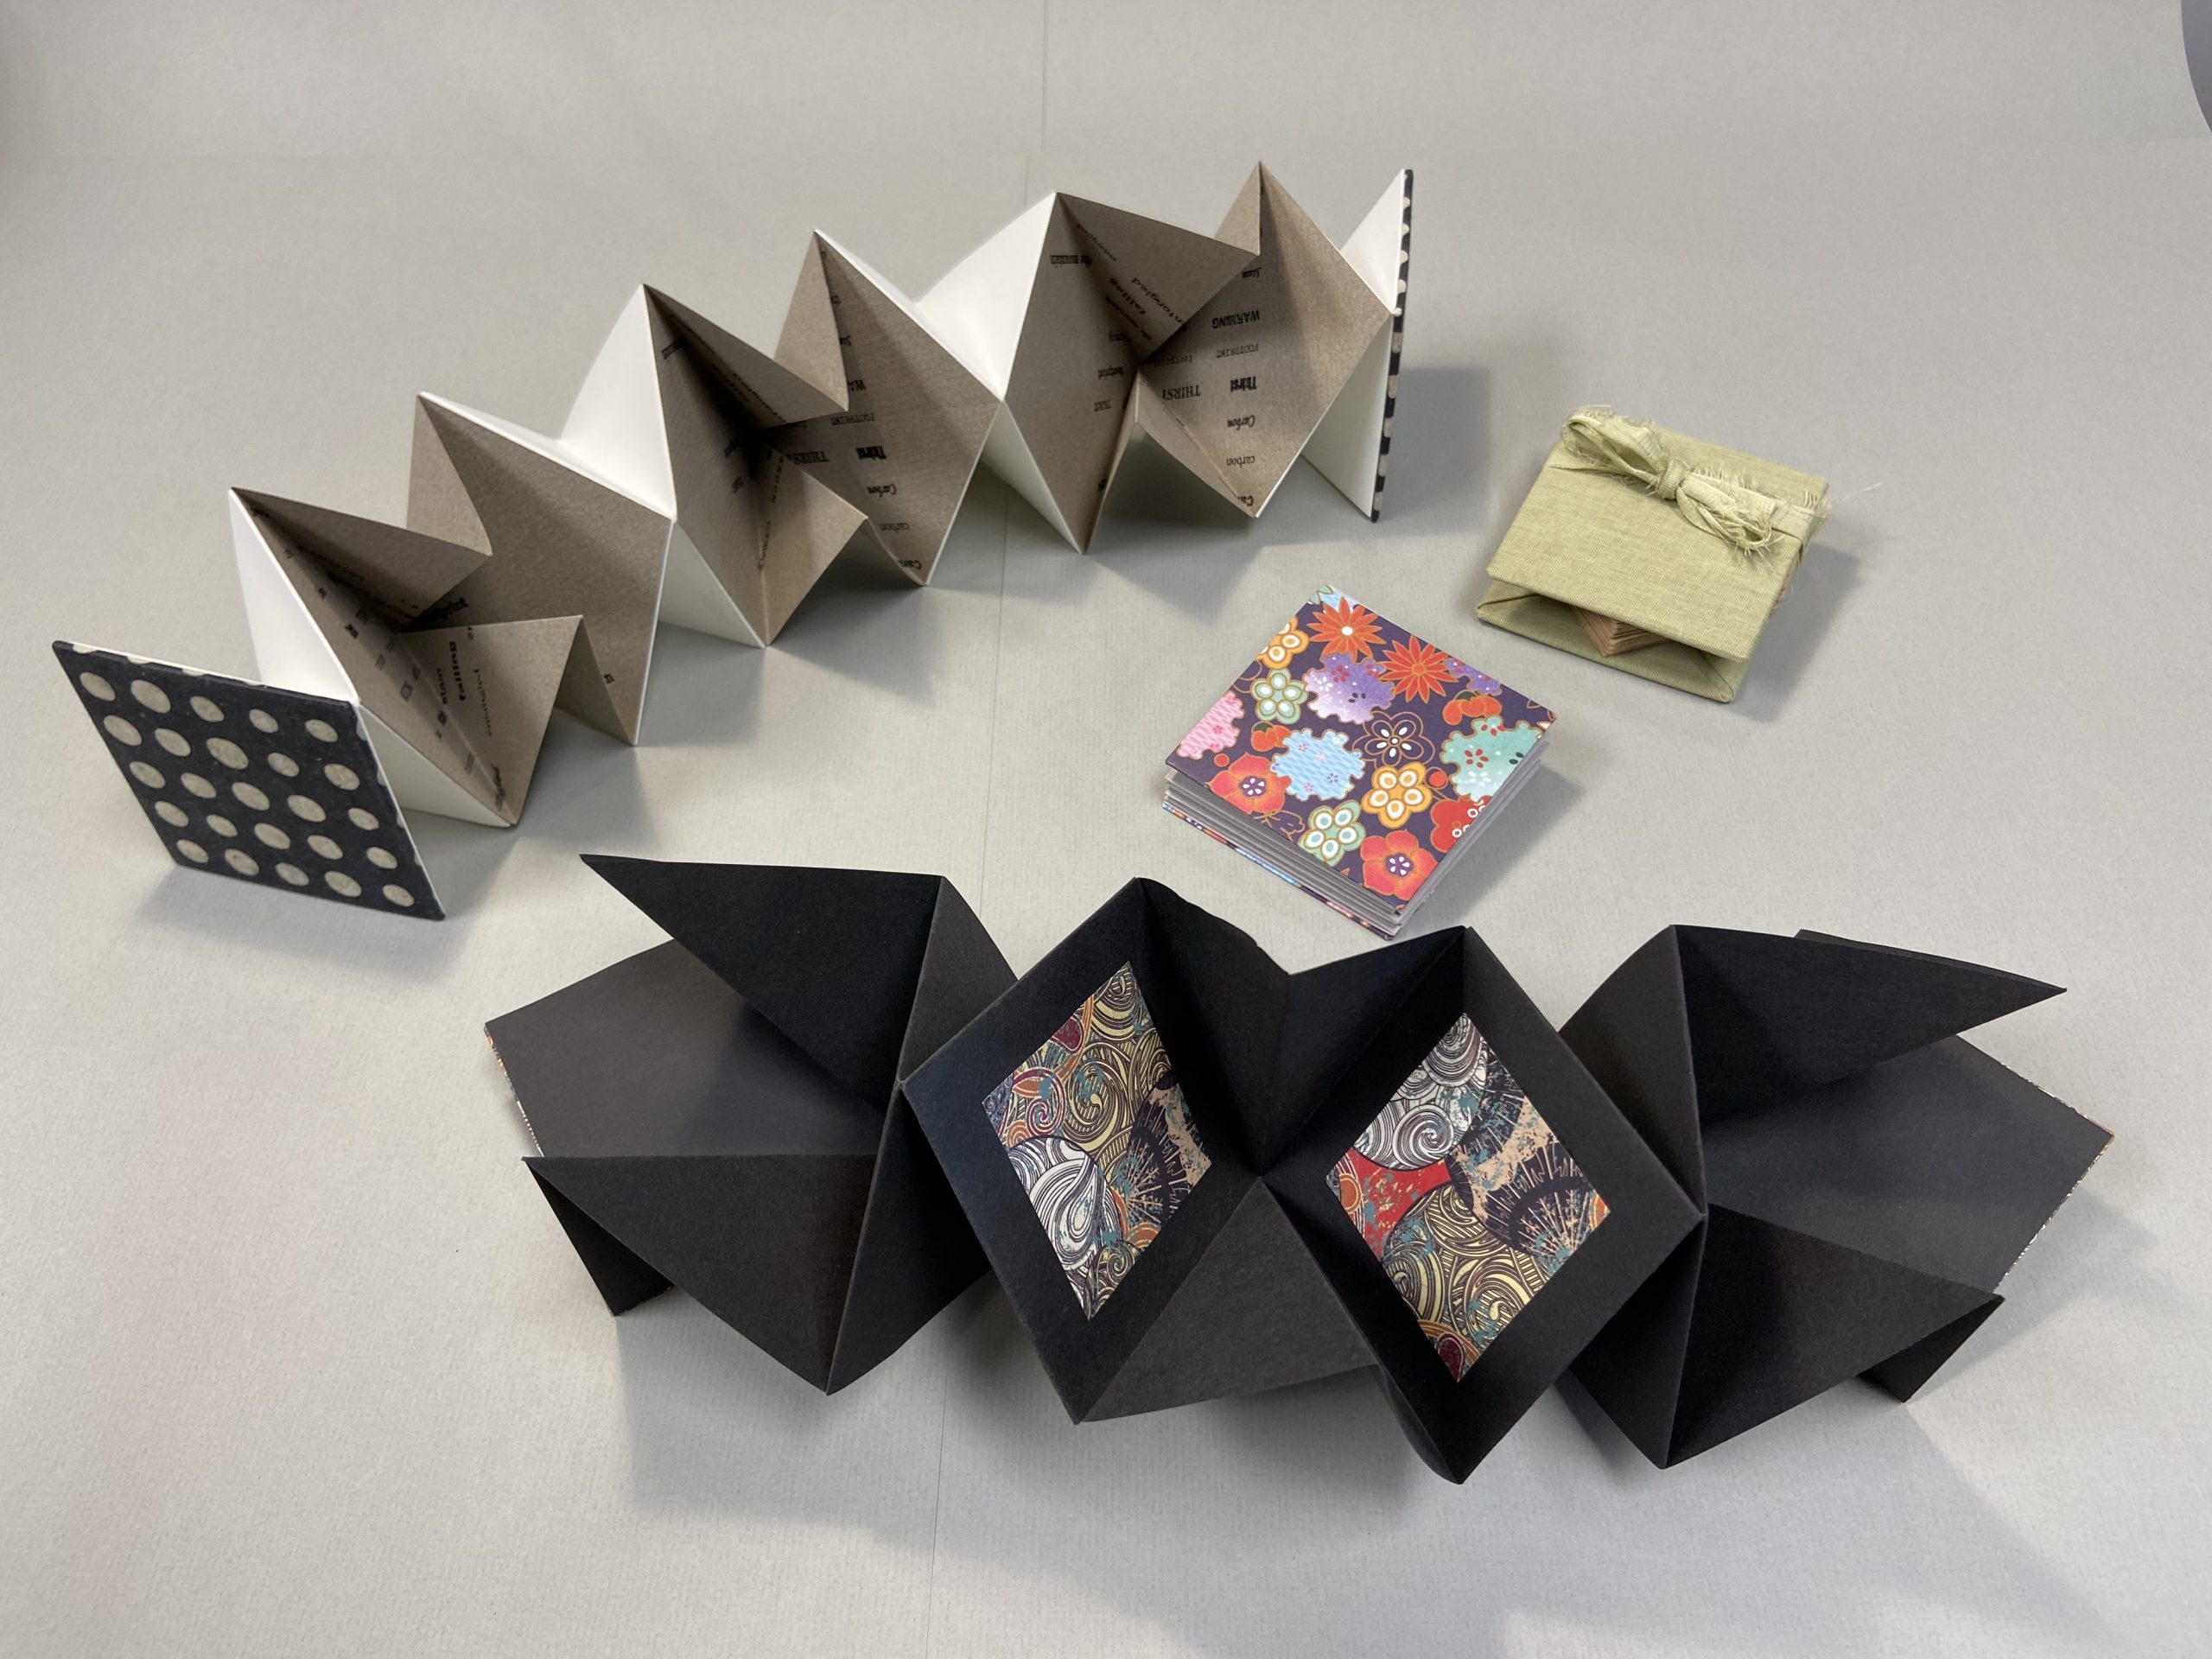 Make+Take: Lotus Fold Book Structure